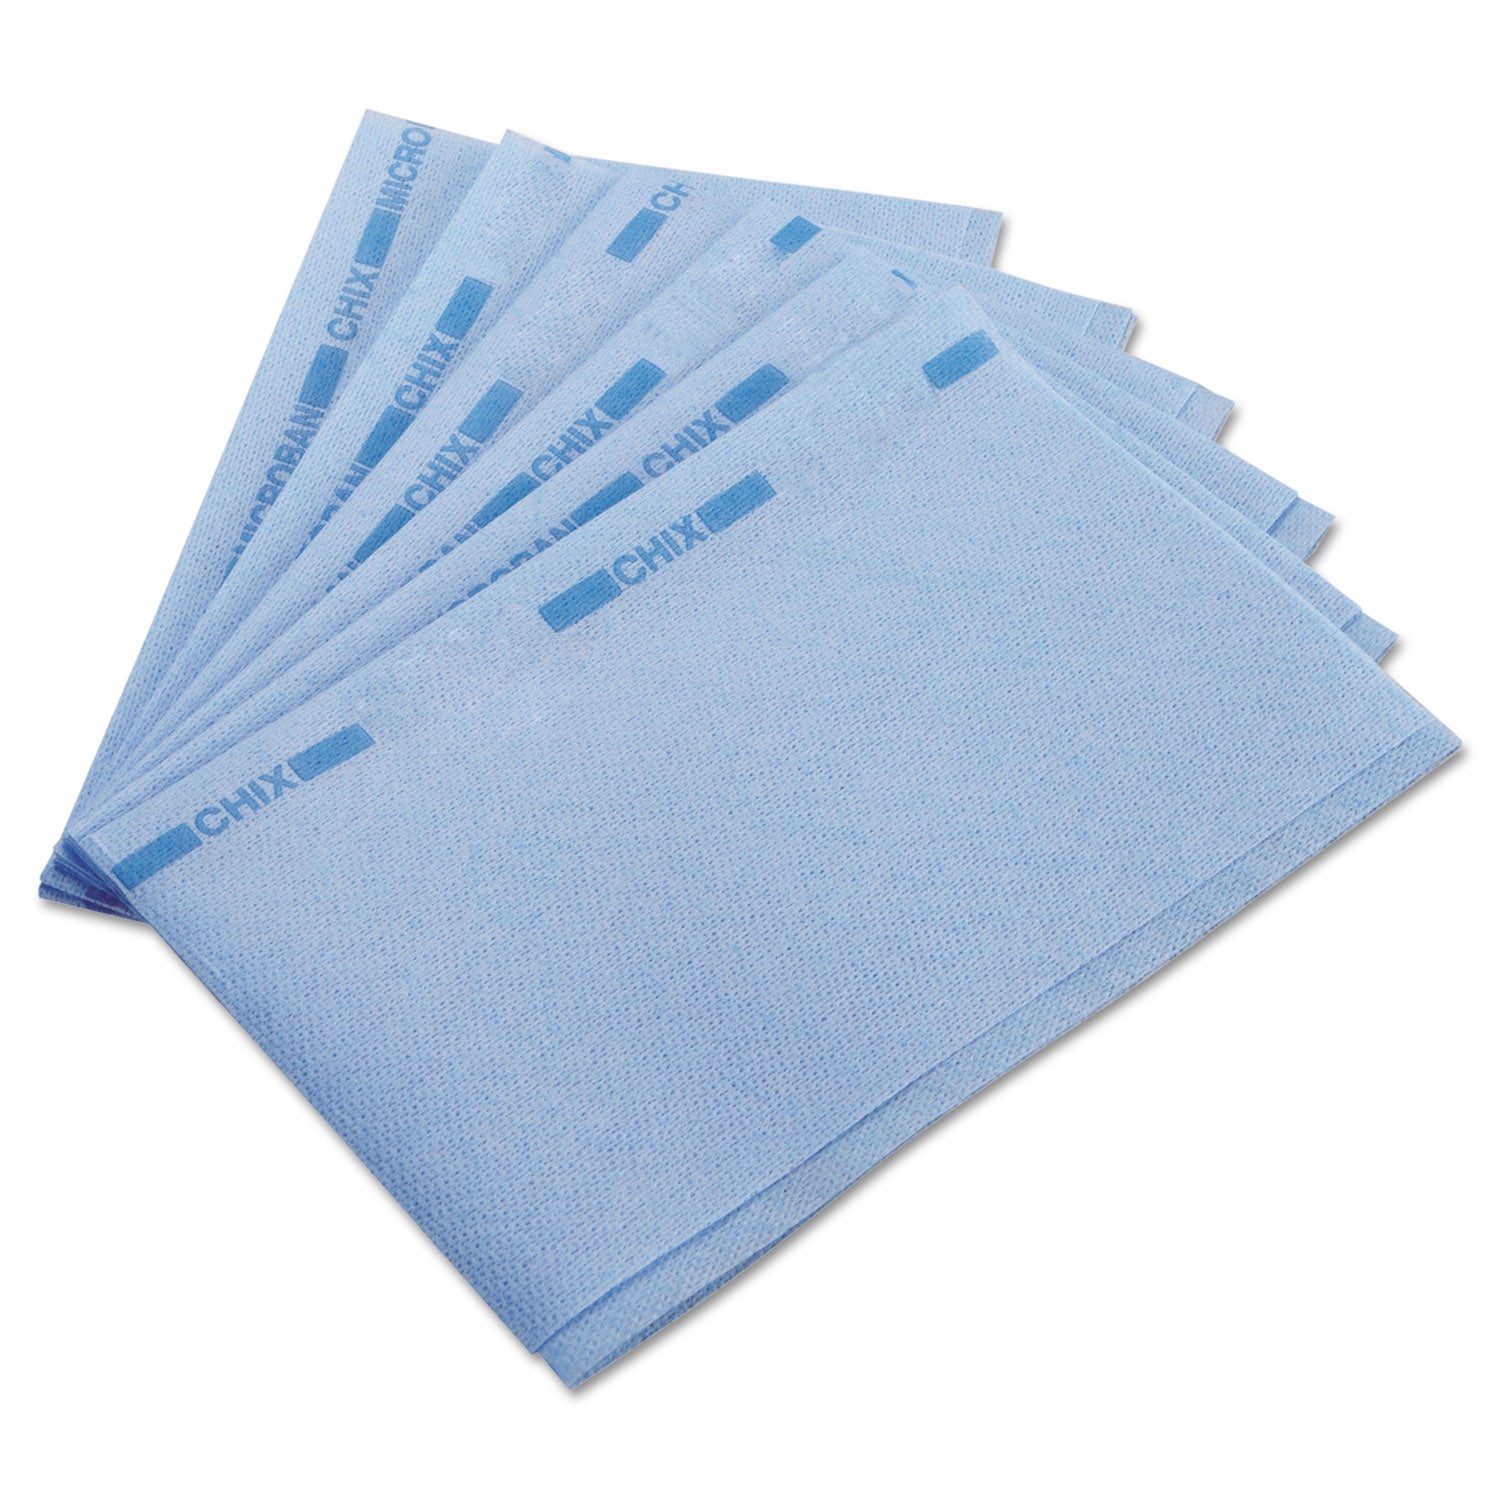 Food Service Towels, 13 x 21, Blue, 150/Carton - 